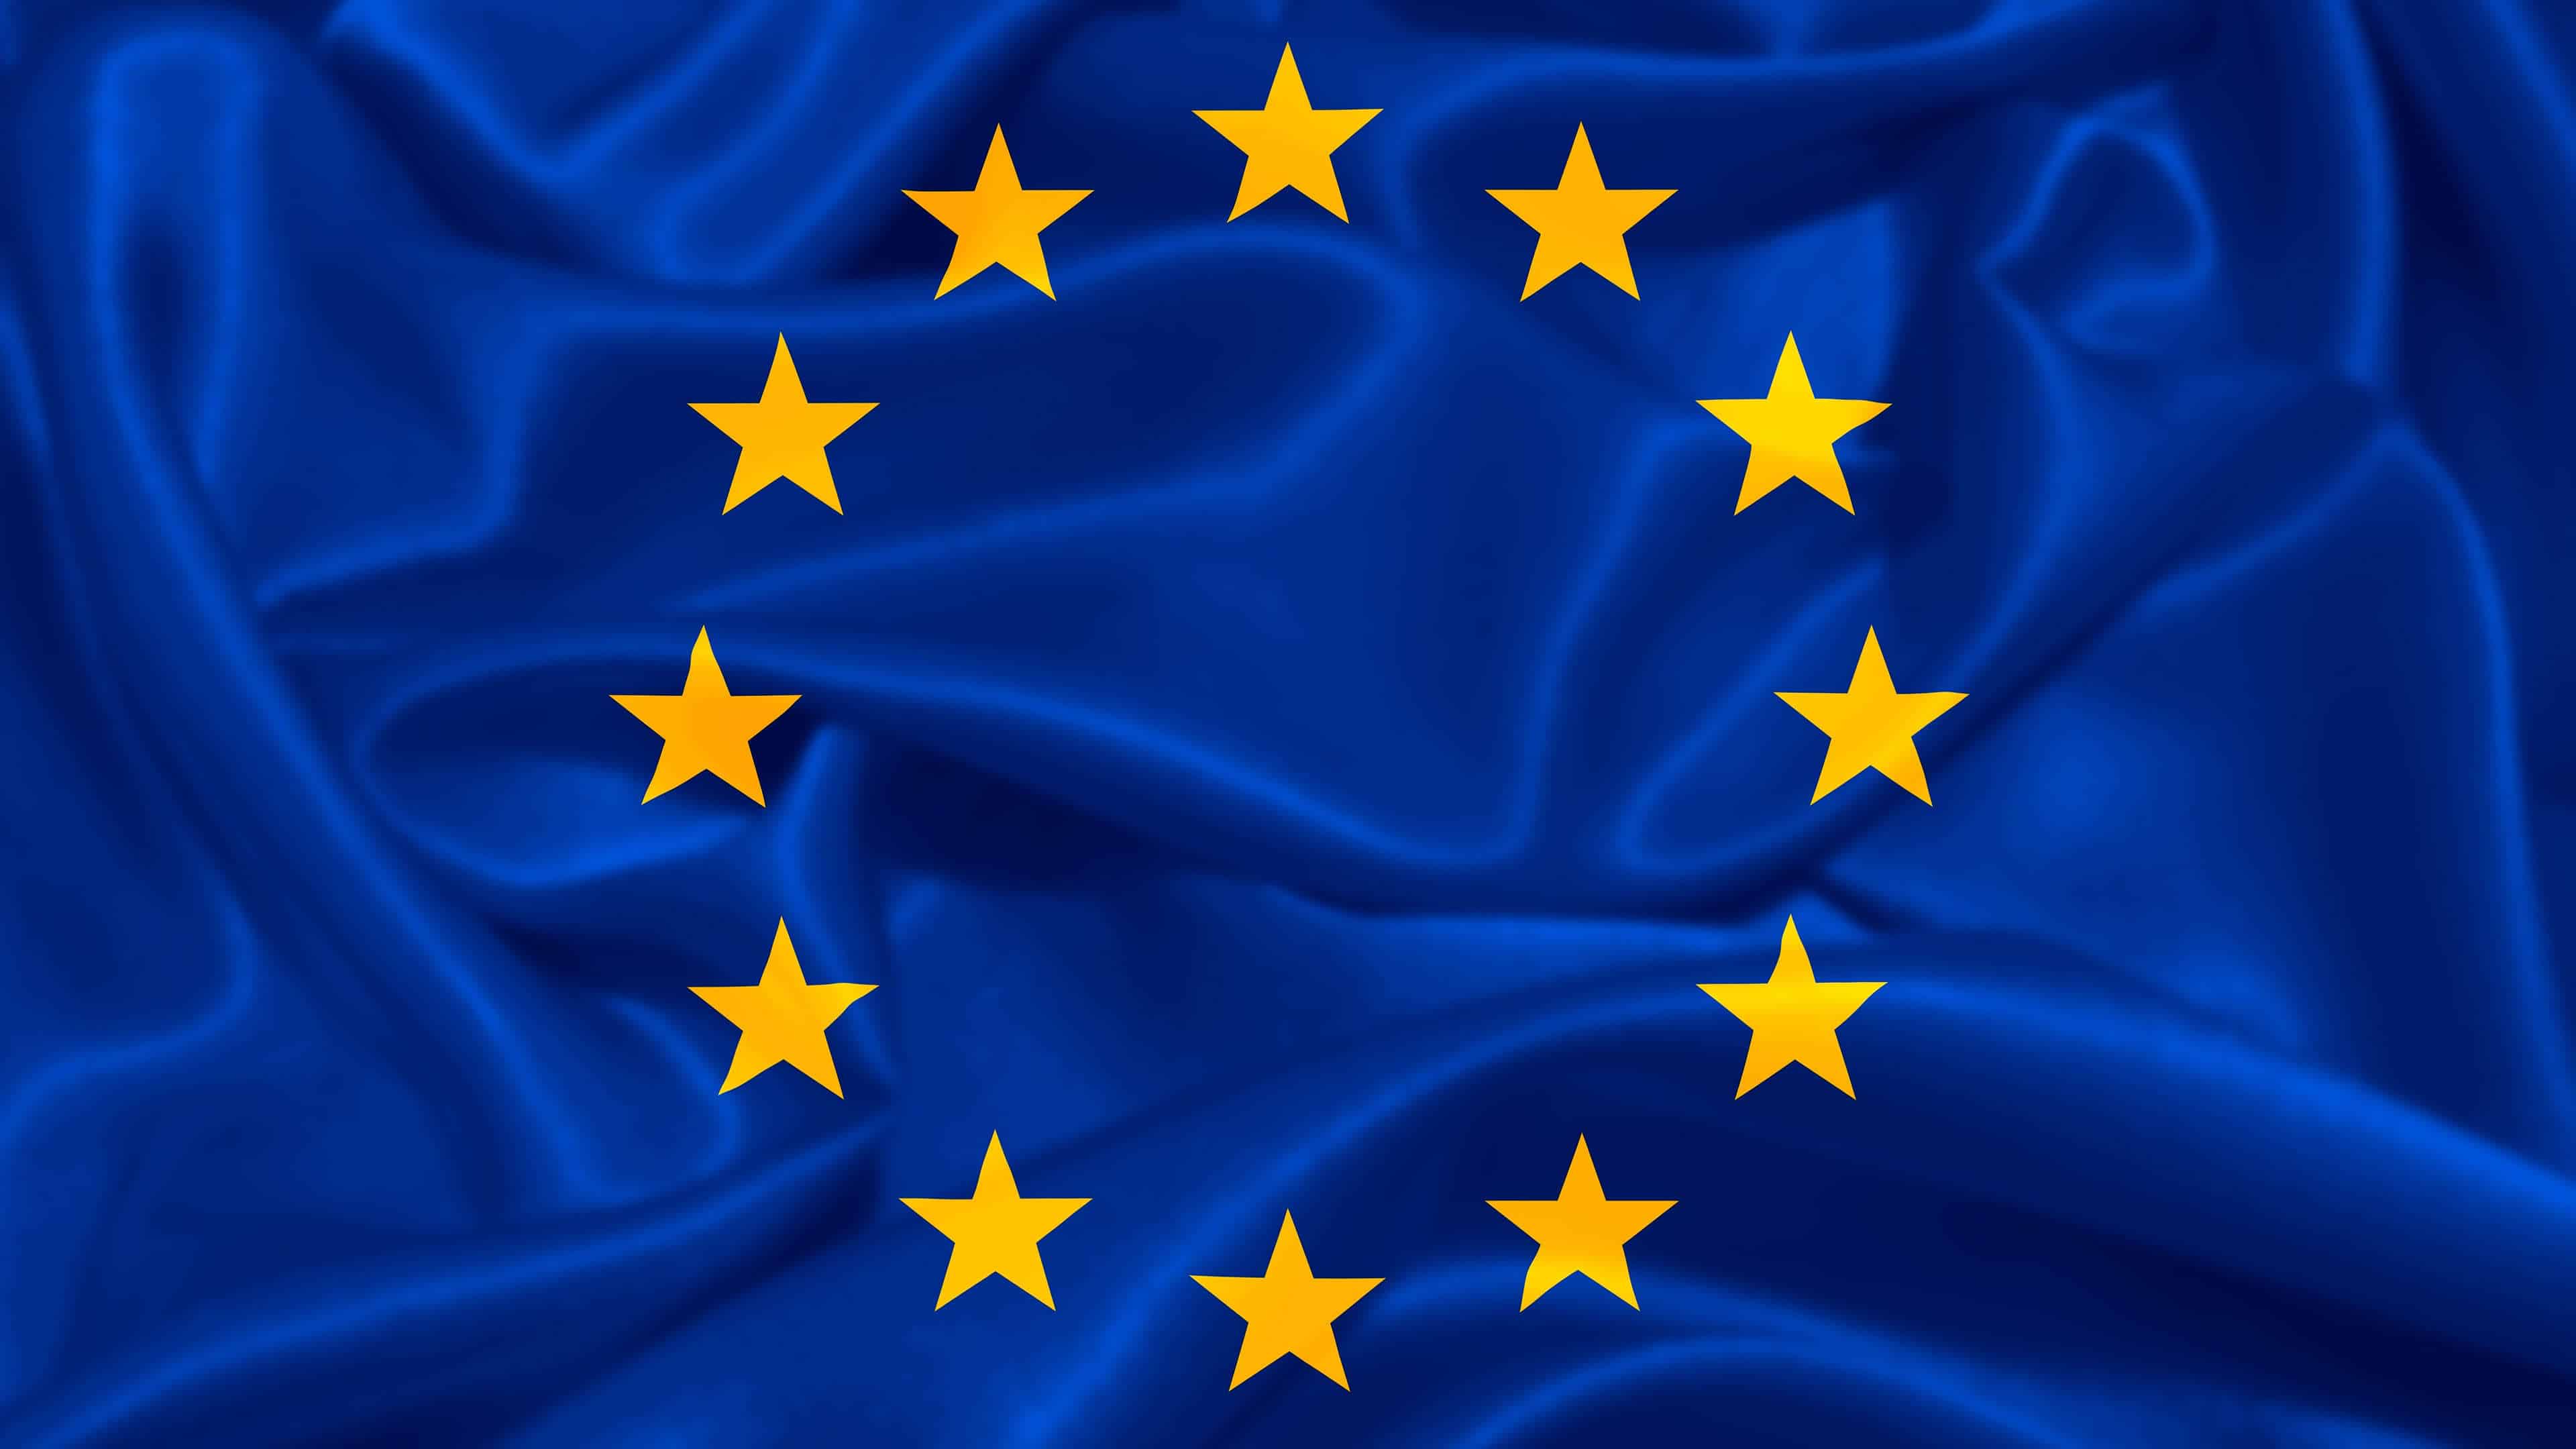 Sfondo UHD 4K con bandiera dell'Unione Europea | Pixelz